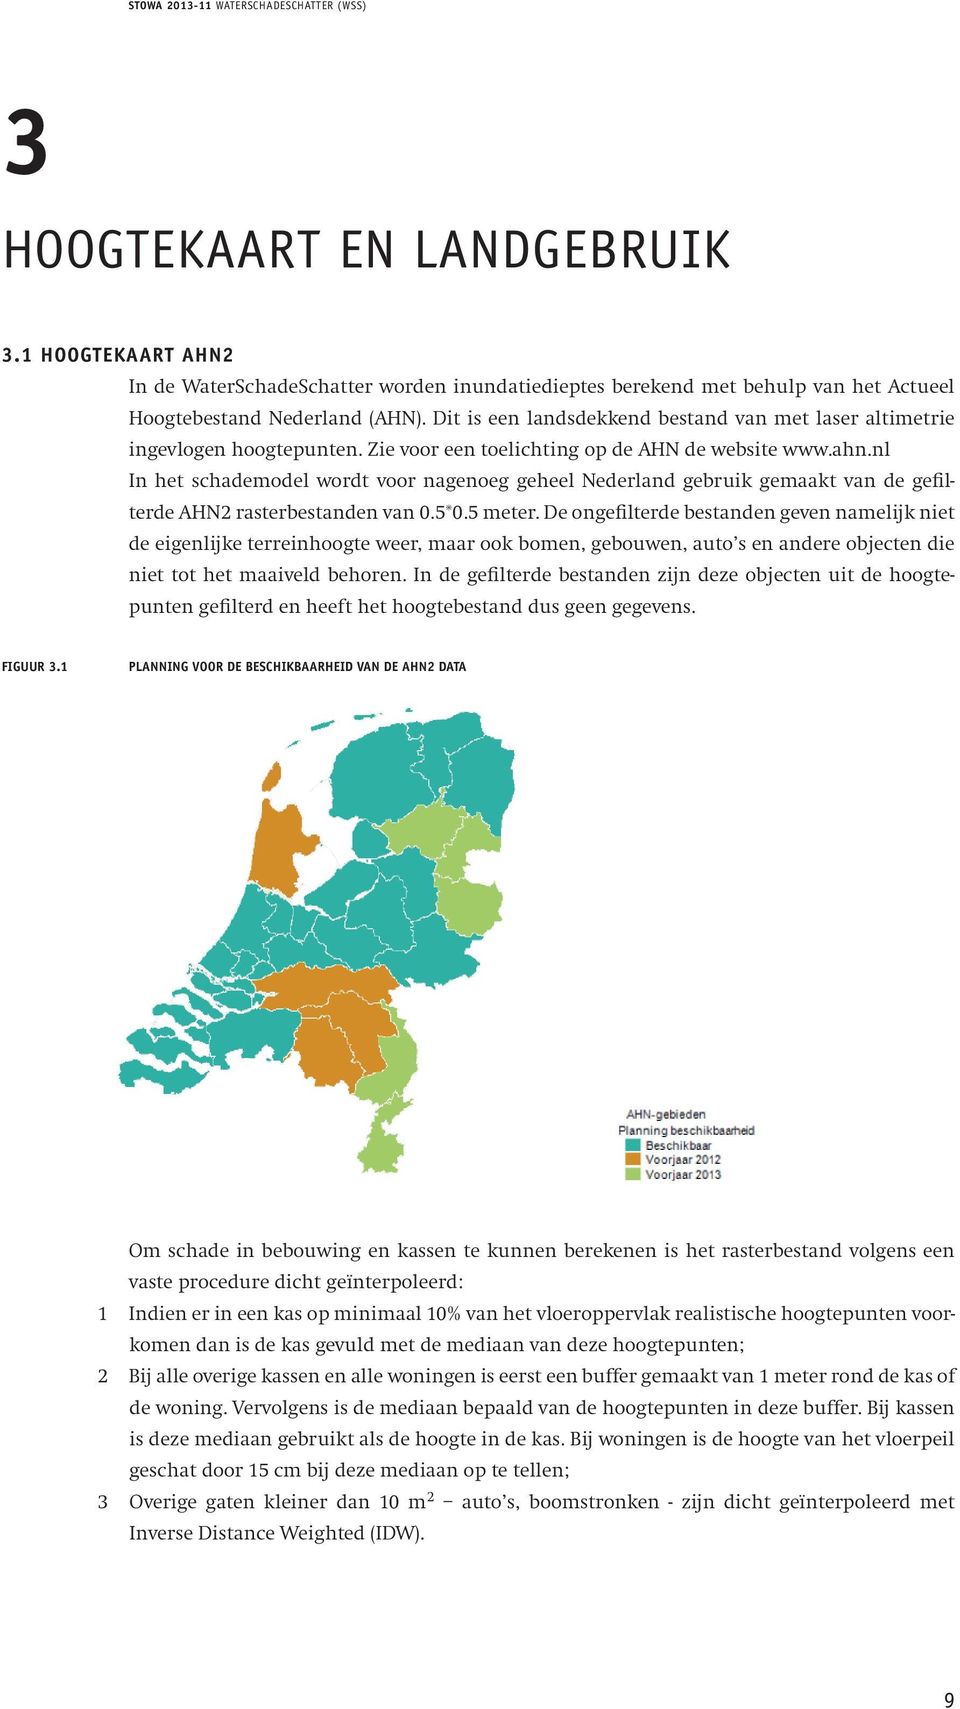 worden Zie voor inundatiedieptes een toelichting berekend op de AHN met de behulp website van www.ahn.nl het Actueel Hoogtebestand In het schademodel Nederland wordt (AHN).